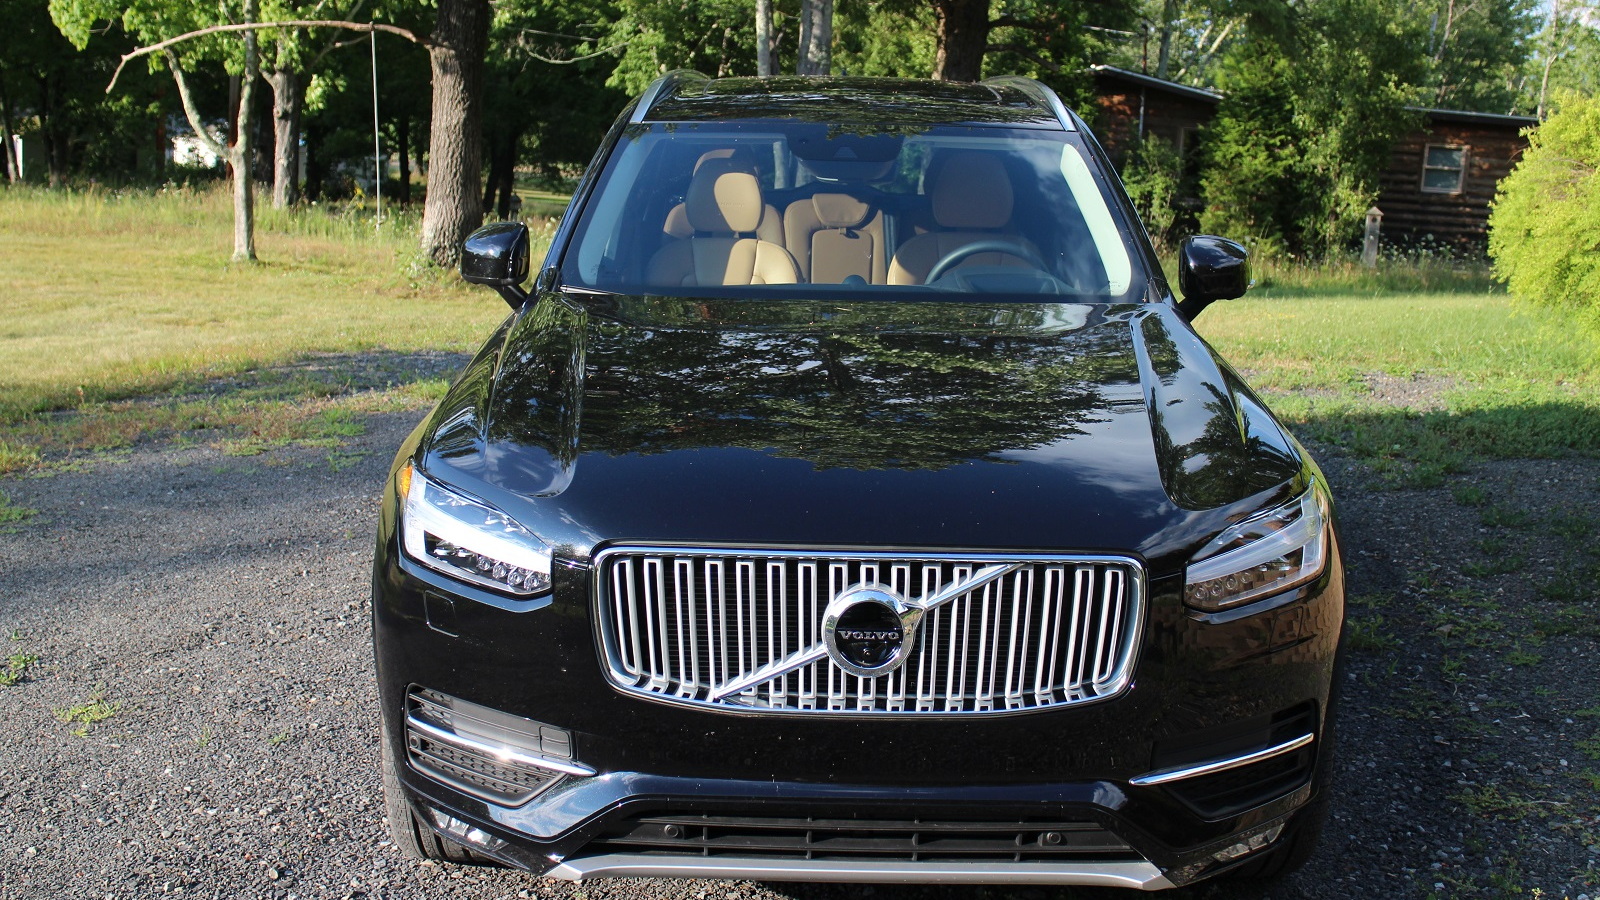 2016 Volvo XC90, Catskill Mountains, NY, Aug 2015